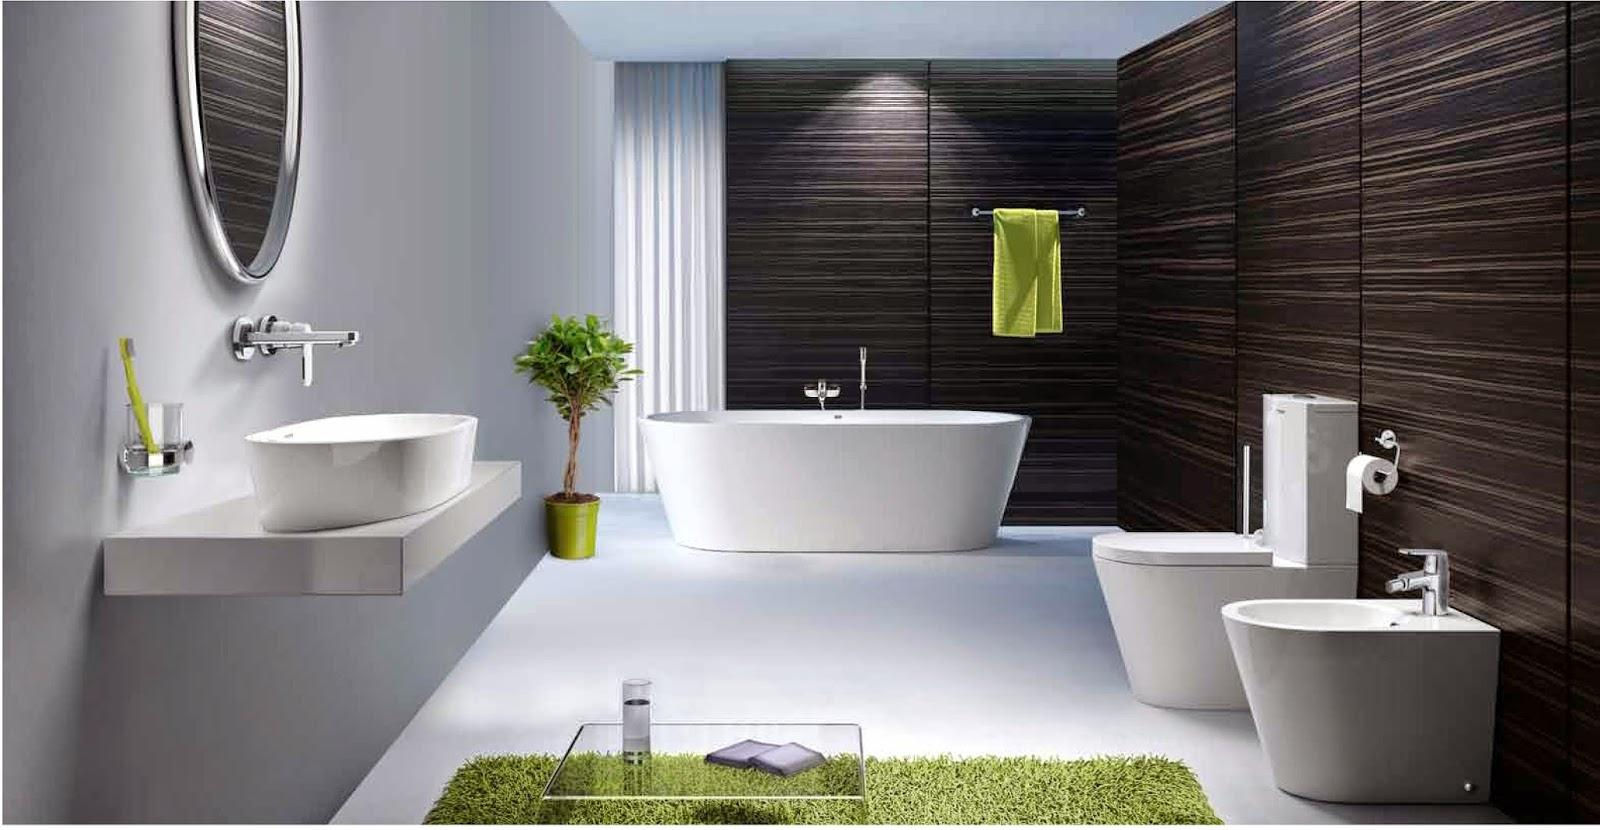 Gia chủ có thể bày trí những đồ vật từ gương, cây xanh để không gian nhà tắm thêm tươi mới hơn. Ảnh minh họa (nguồn internet).